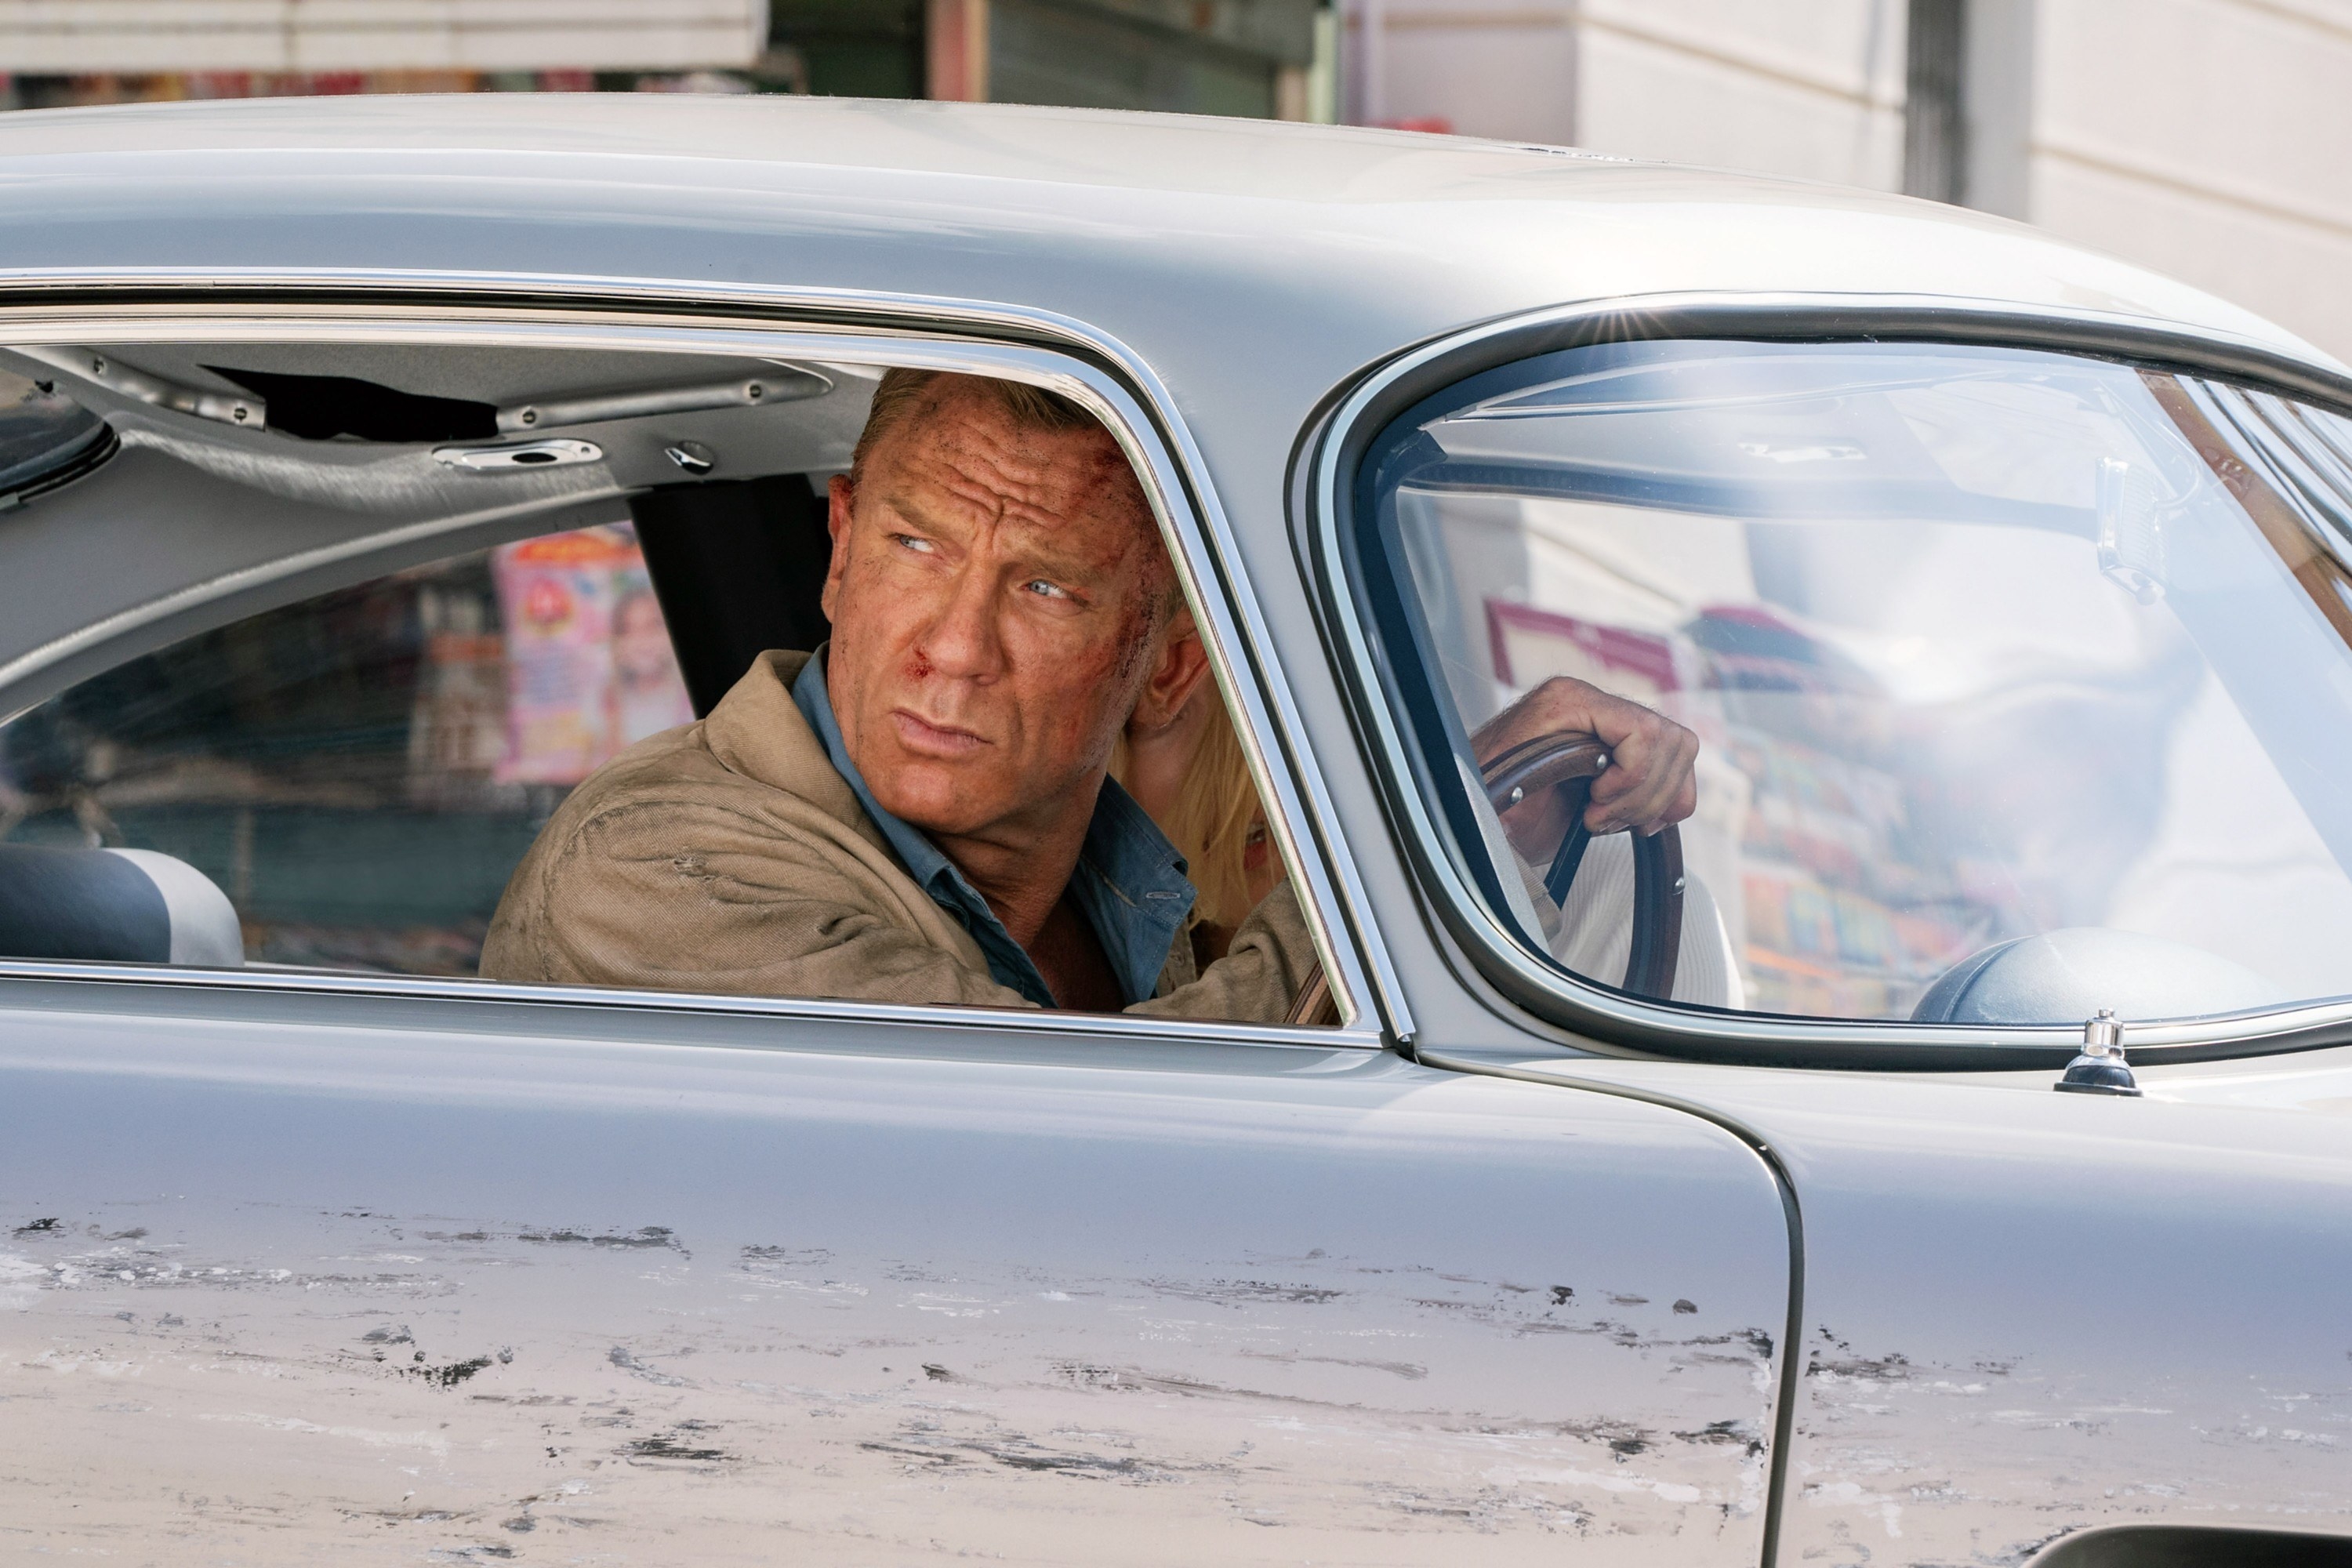 Daniel as Bond behind the wheel of a car